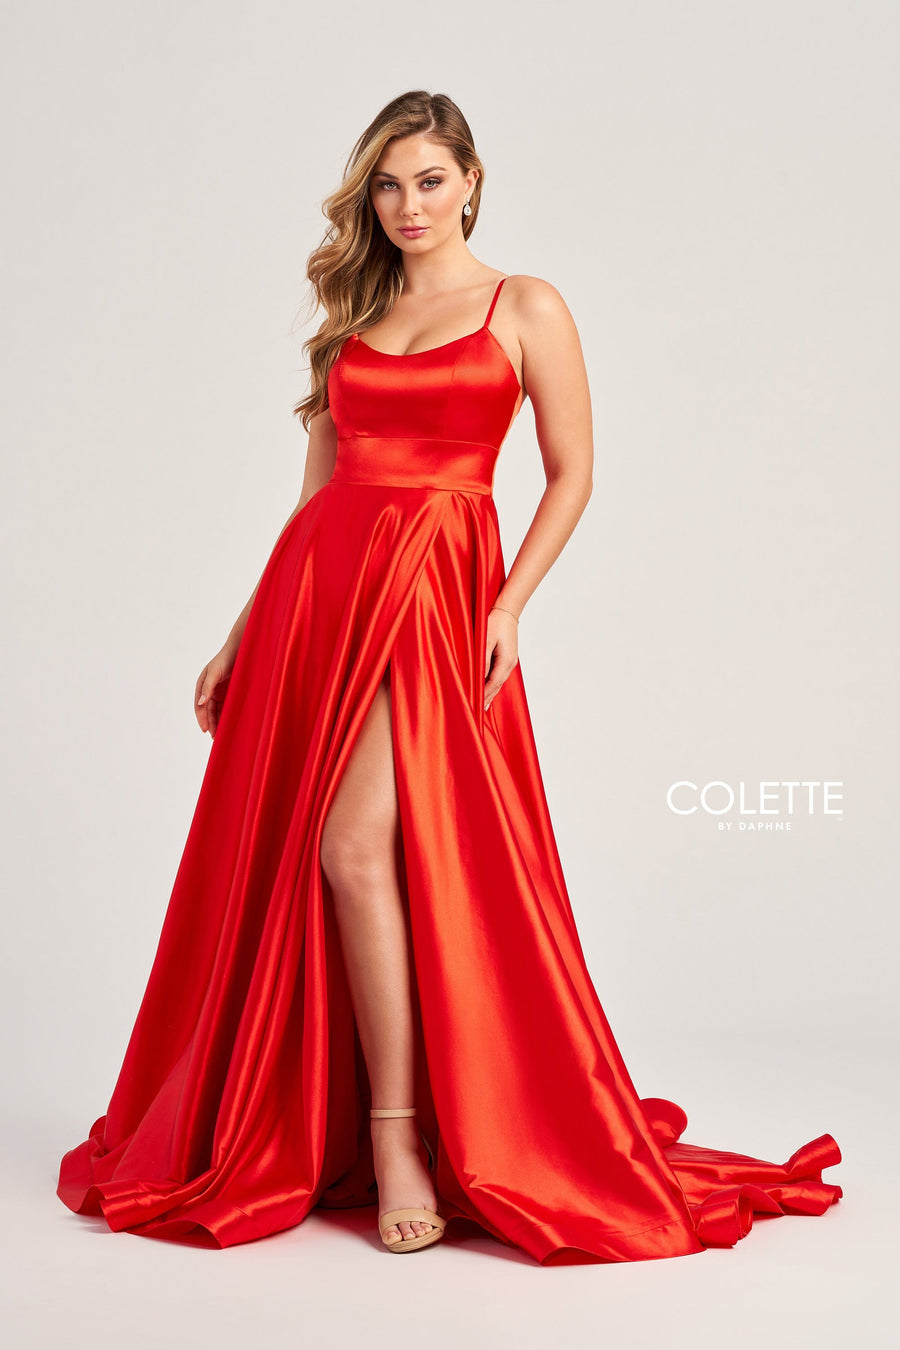 Colette for Mon Cheri Prom Colette: CL5283